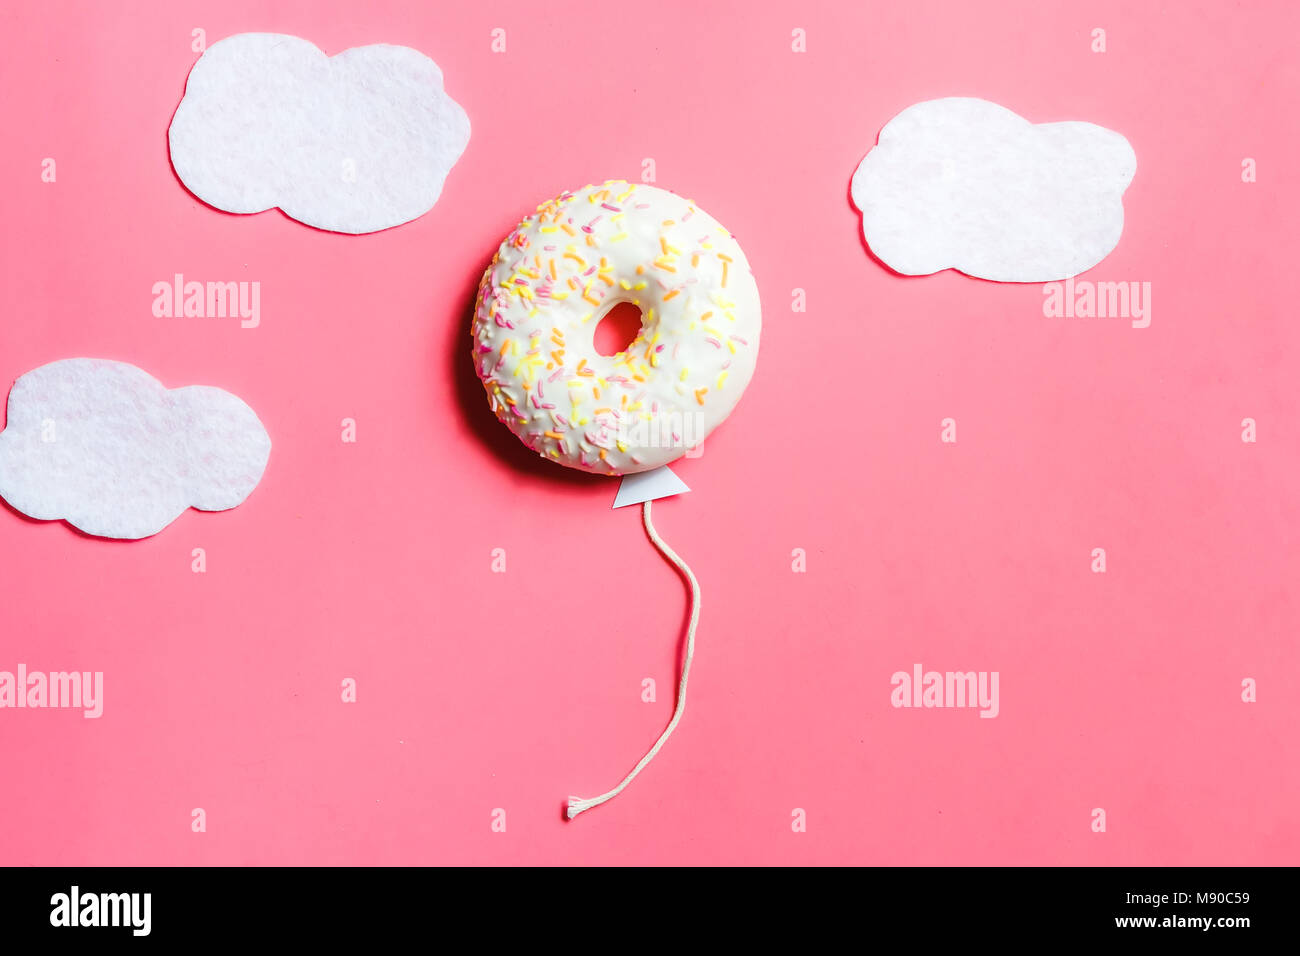 Donut sur fond rose, une cuisine créative le minimalisme, Donut en forme de ballon en ciel avec nuages, Vue supérieure avec copie Espace, tonique Banque D'Images